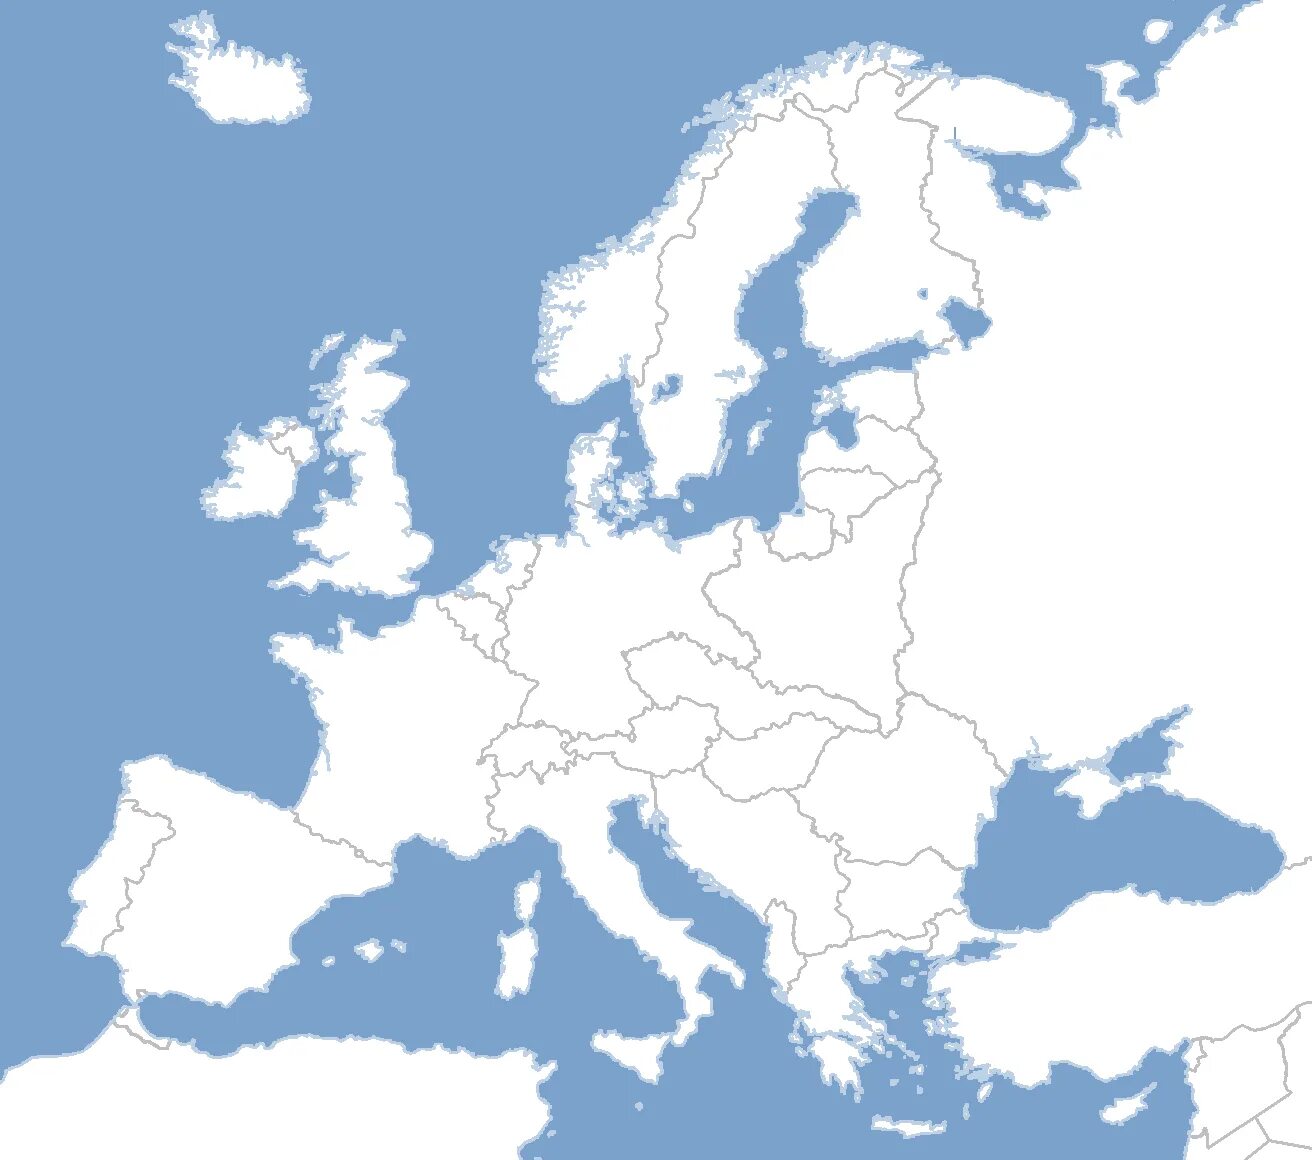 Europa und. Карта - Европа. Границы государств Европы. Карта Европы с границами. Контурная Европы.